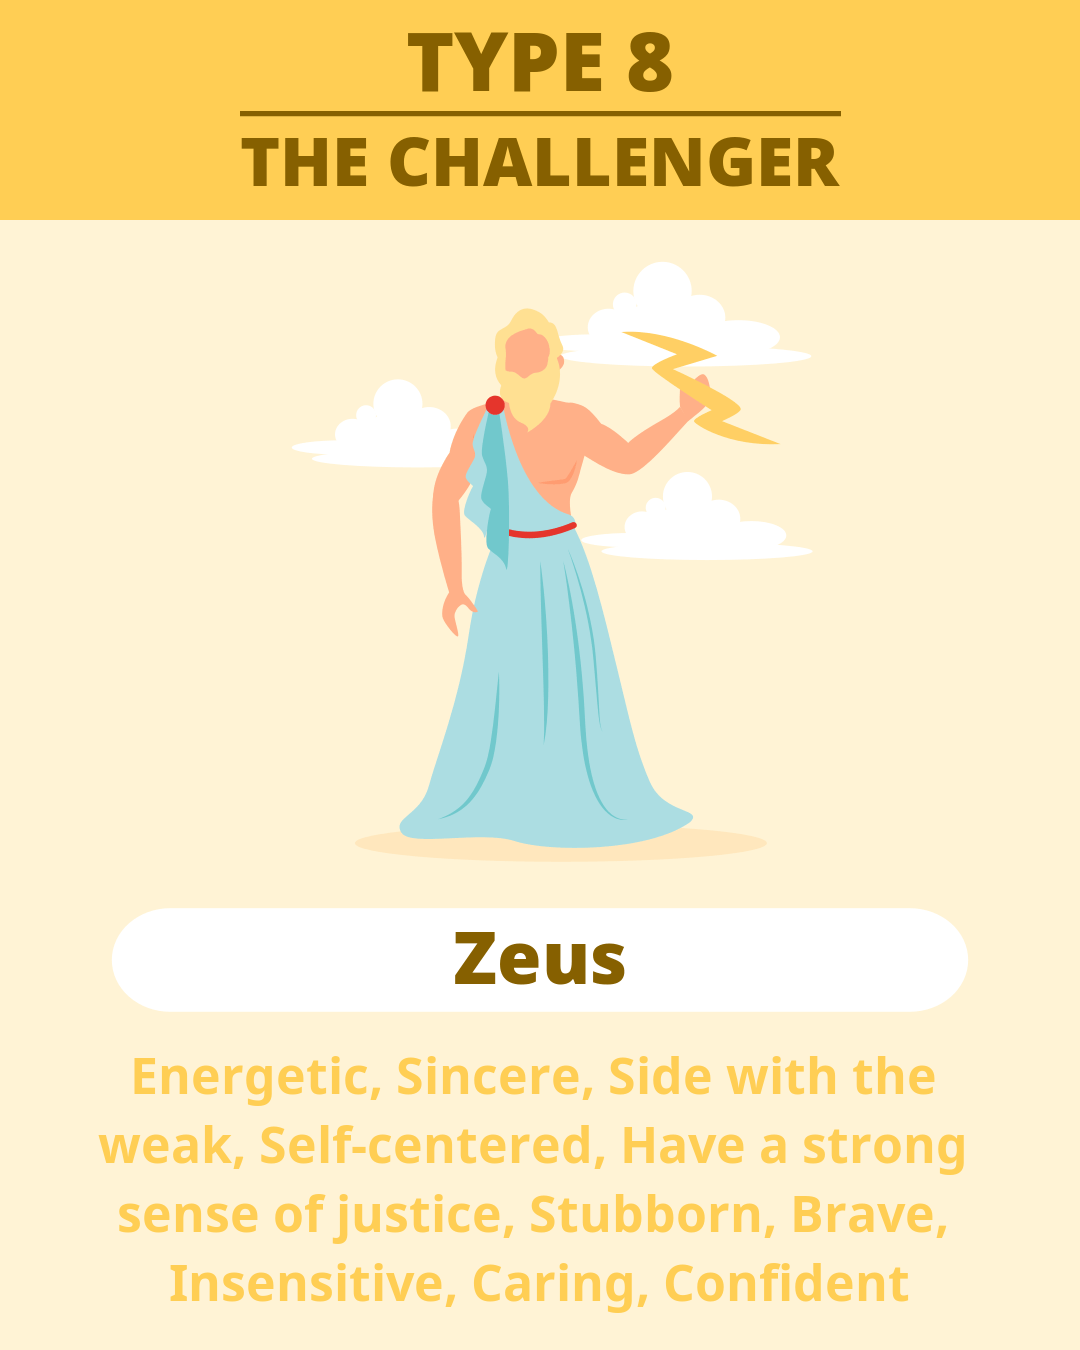 TYPE 8 - Zeus(THE CHALLENGER)